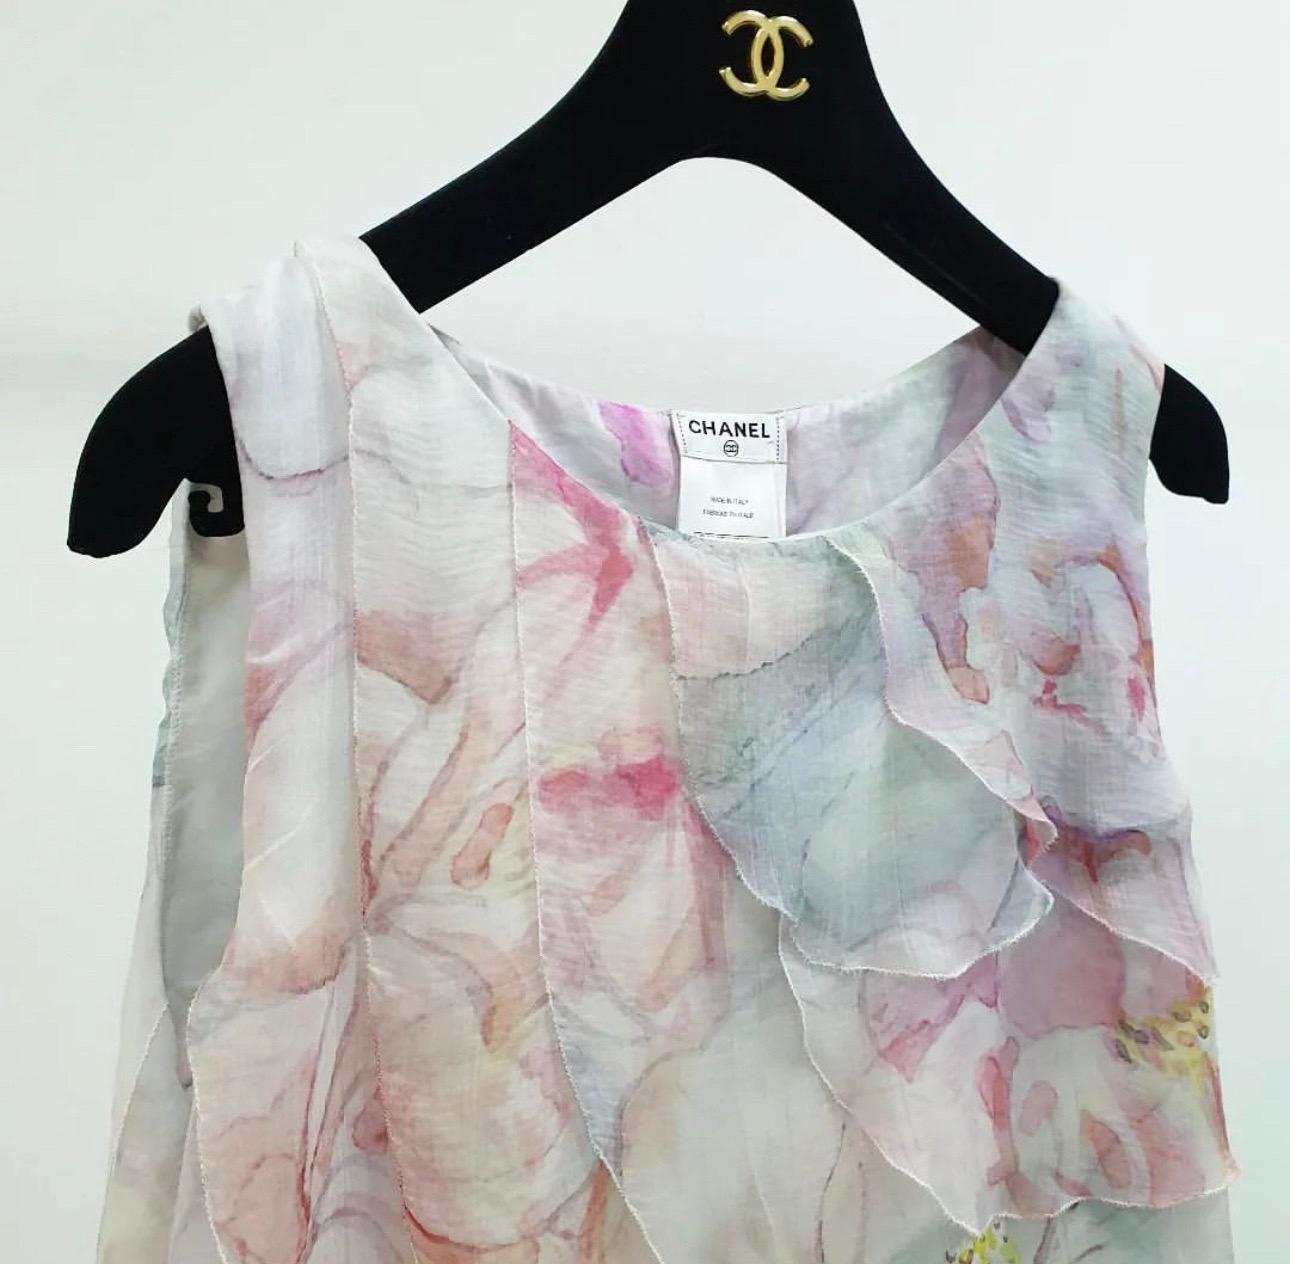 Diese ärmellose Bluse von Chanel ist perfekt für den Frühling und den Sommer und lässt sich den ganzen Tag über tragen. Sie ist ein unverzichtbares Stück femininer Mode.
Diese Bluse aus Baumwollstoff mit mehrfarbigem Blumendruck und Aquarellmuster